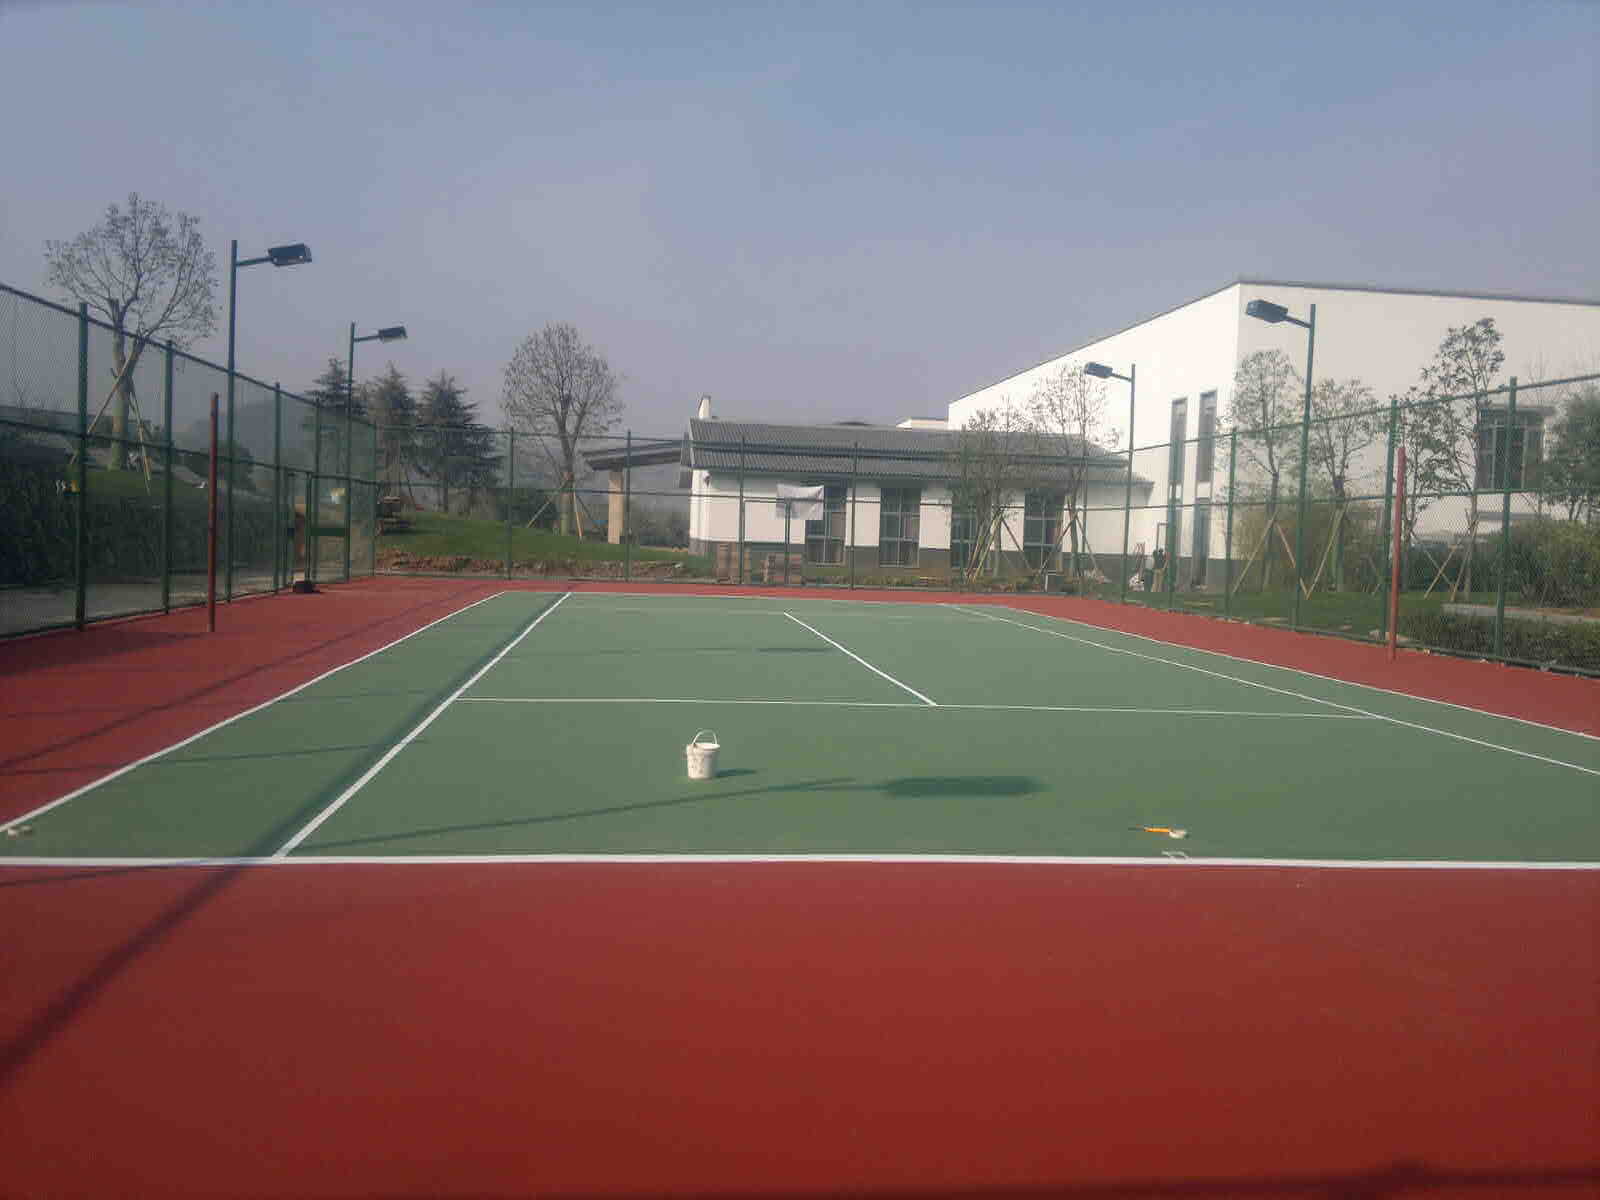 供应南海丙烯酸球场 南海塑胶球场 篮球场网球场翻新改造工程